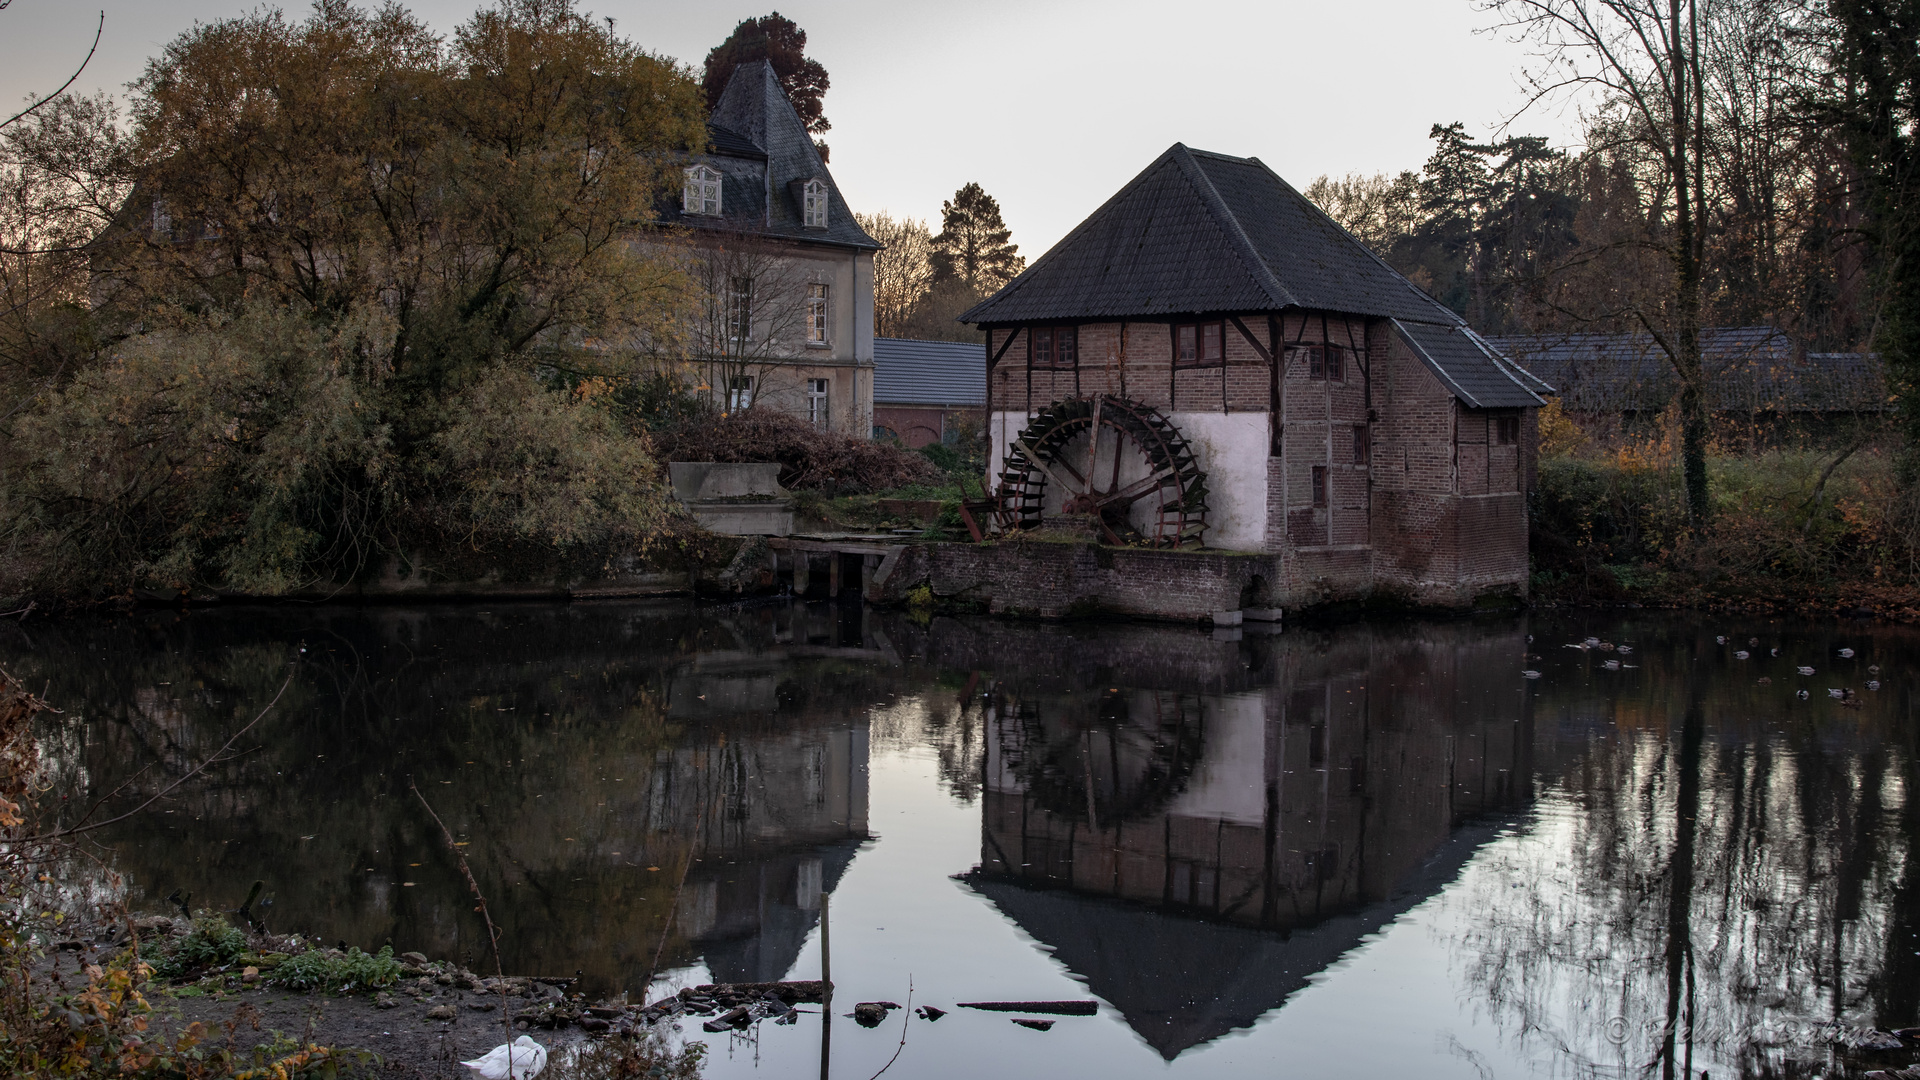 Nebengebäude Wassermühle Schloss Caen